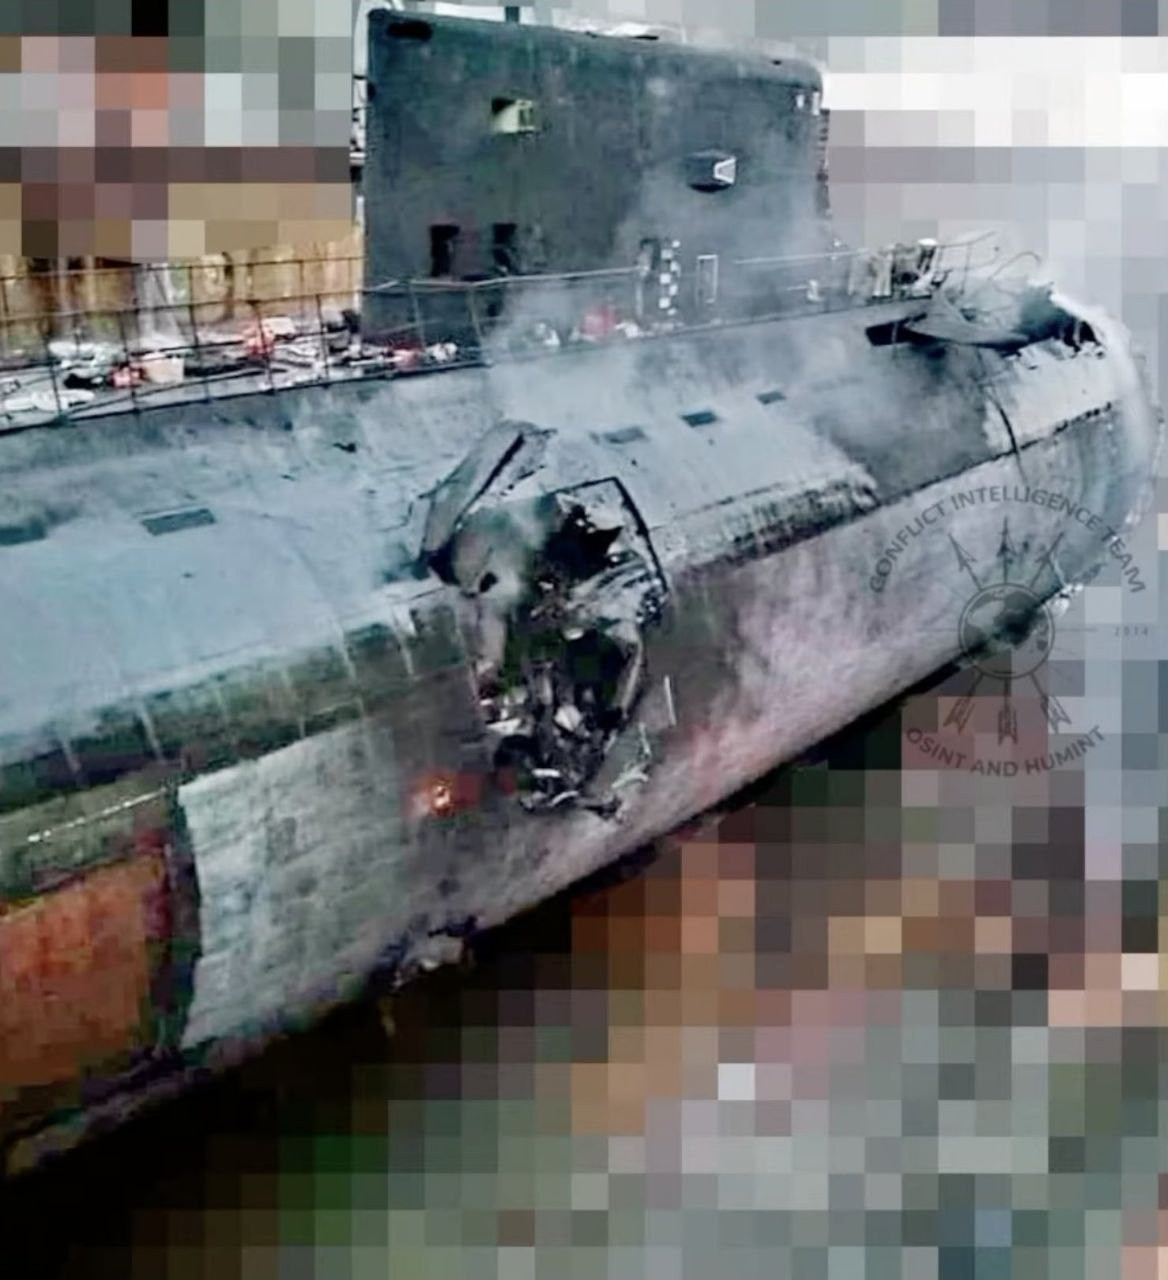 Aparecen imau0301genes de los danu0303os en el submarino ruso Rostov on Don tras un ataque ucraniano con misiles contra Sebastopol, Crimea Fuente entre guerras